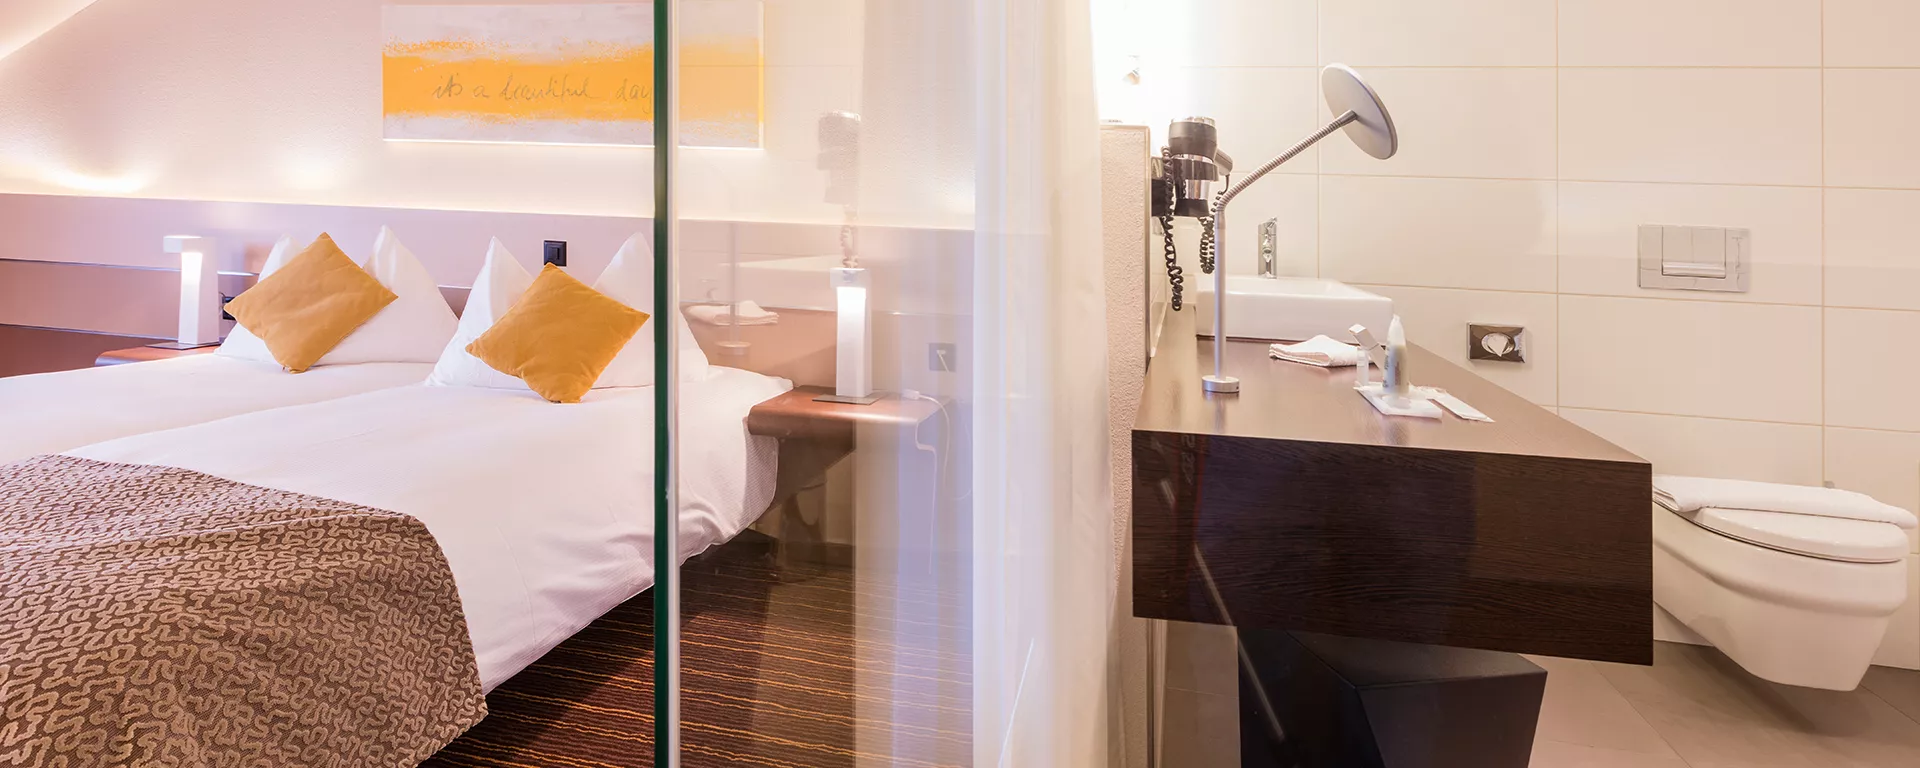 Comfort Hotelzimmer mit Badezimmer im Hotel riverside